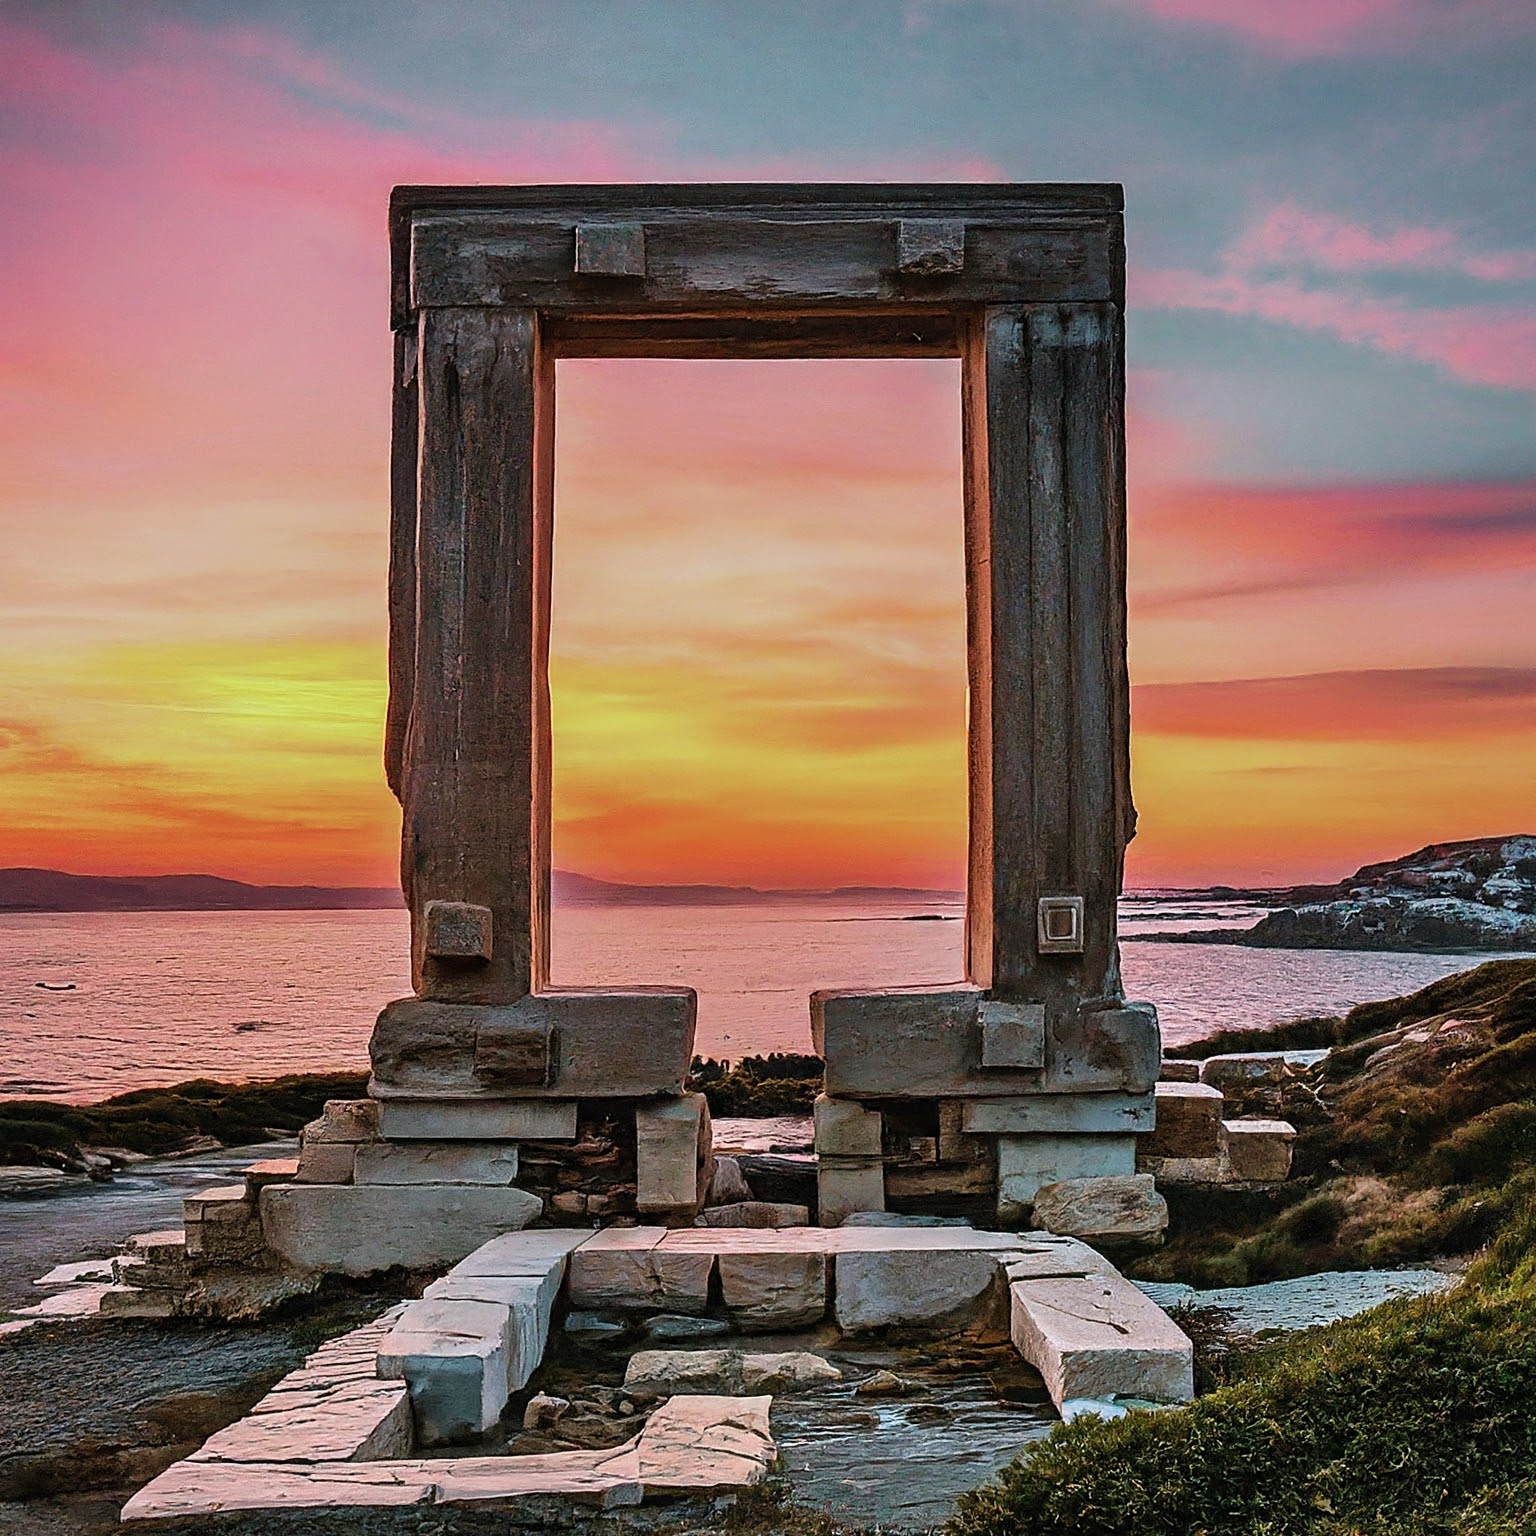 Portara, the Naxos Gate, at sunset in Naxos Island, Greece.